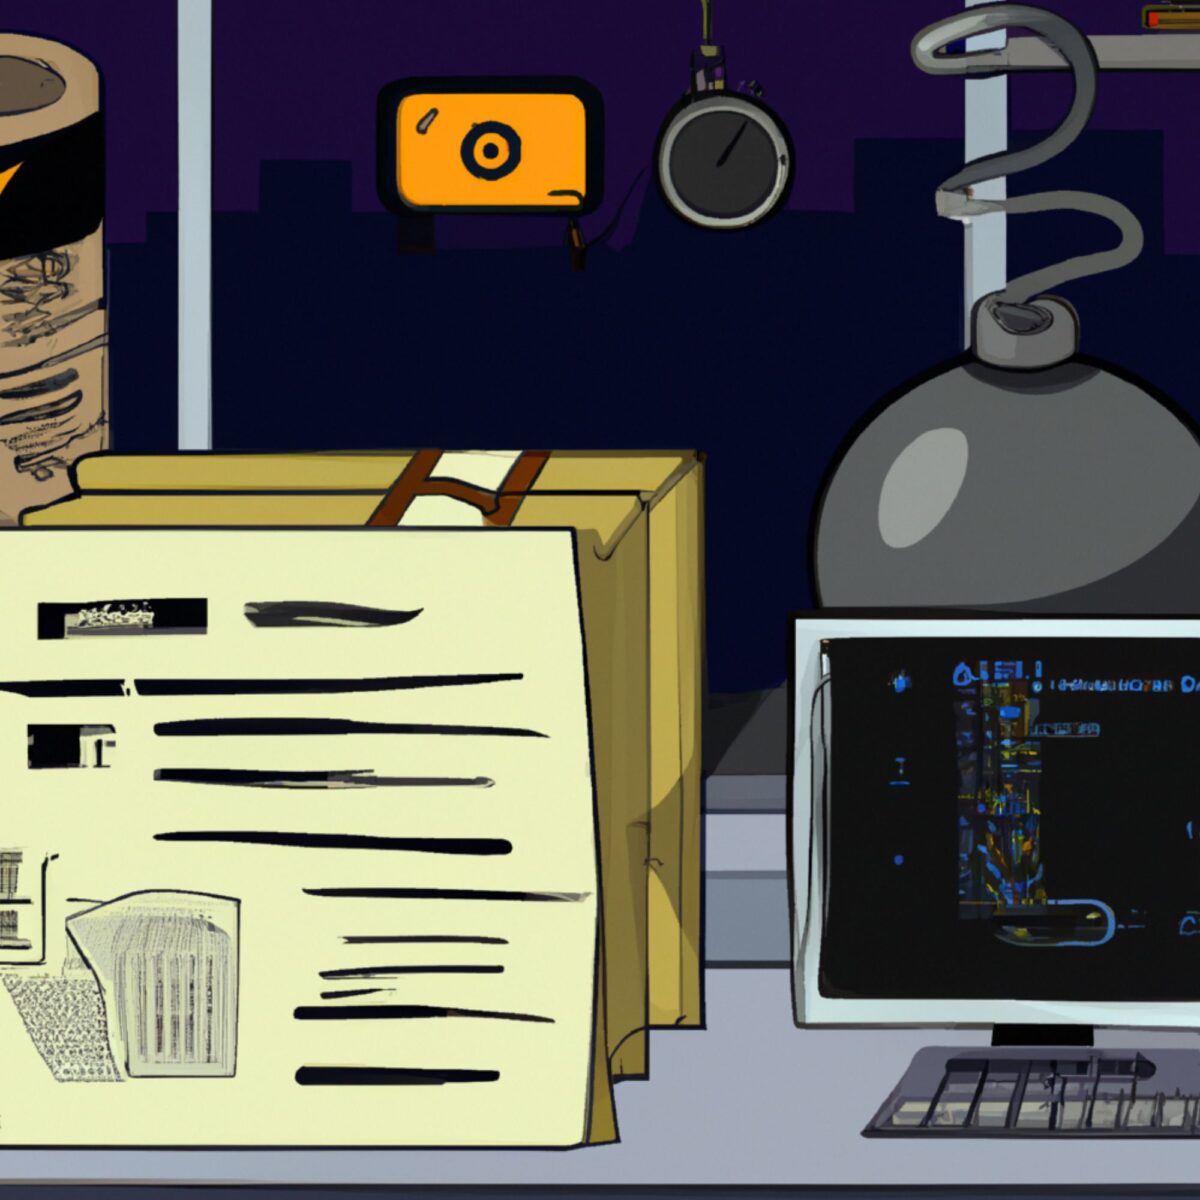 Ein illustriertes Arbeitszimmer bei Nacht mit einem orange leuchtenden Radio, Kopfhörern, einer Spirallampe, einer großen Flasche, einem Computer mit blauem technischen Bildschirm und einem gelben Notizblock mit Skizzen und Text.